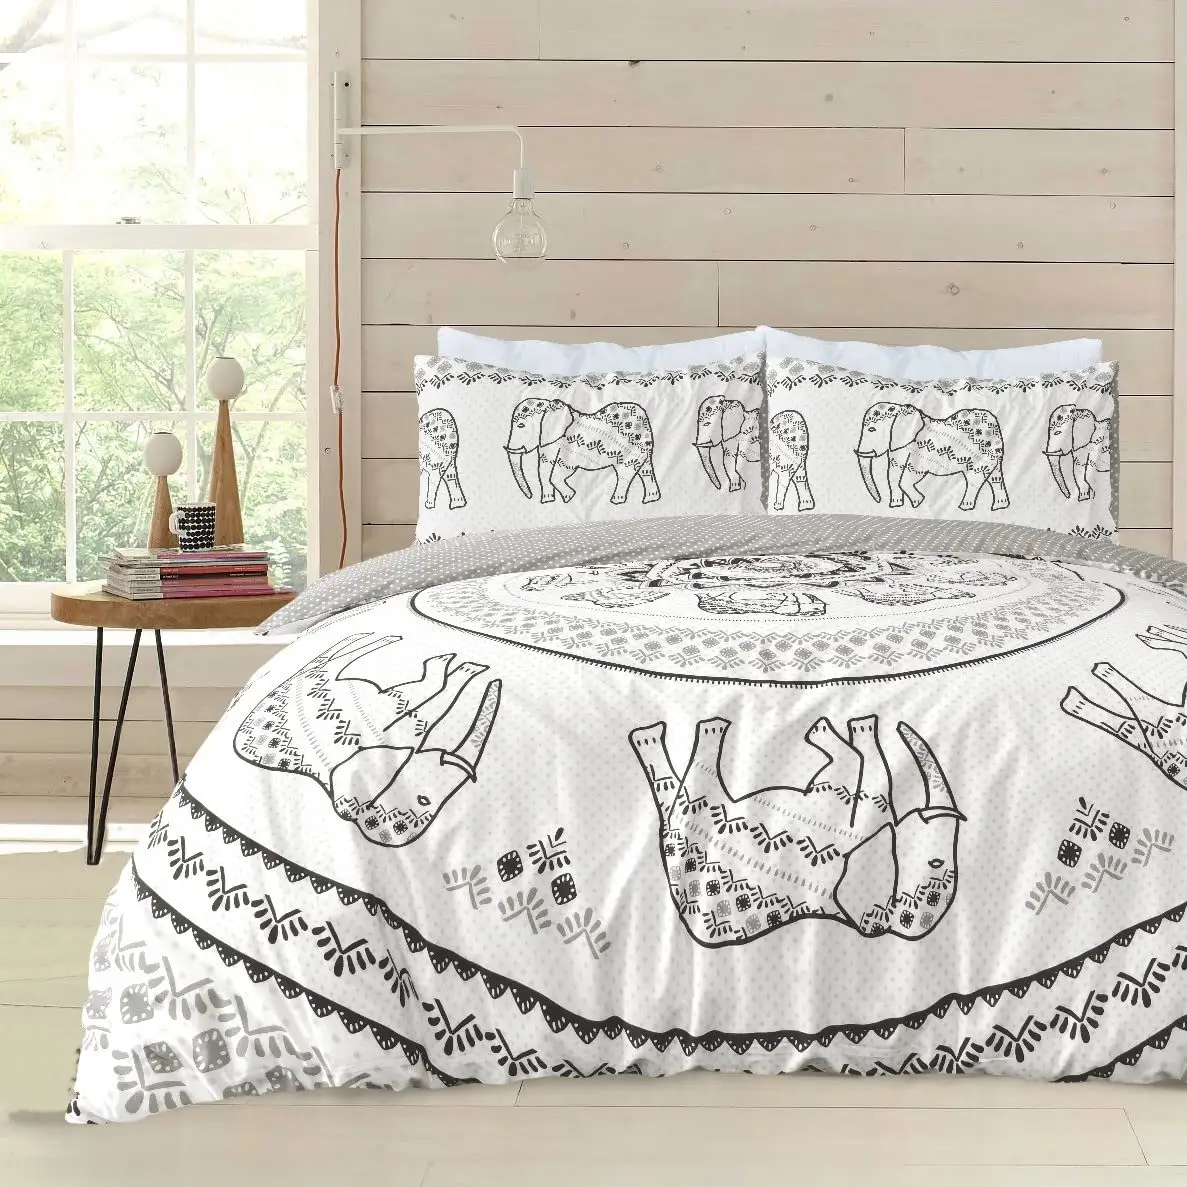 ชุดเครื่องนอนผ้านวมผ้าฝ้ายทุกฤดูกาลคอลเลกชันดอกไม้ที่เป็นมิตรชุดผ้านวมผ้าฝ้ายคลุมเตียงผ้านวม